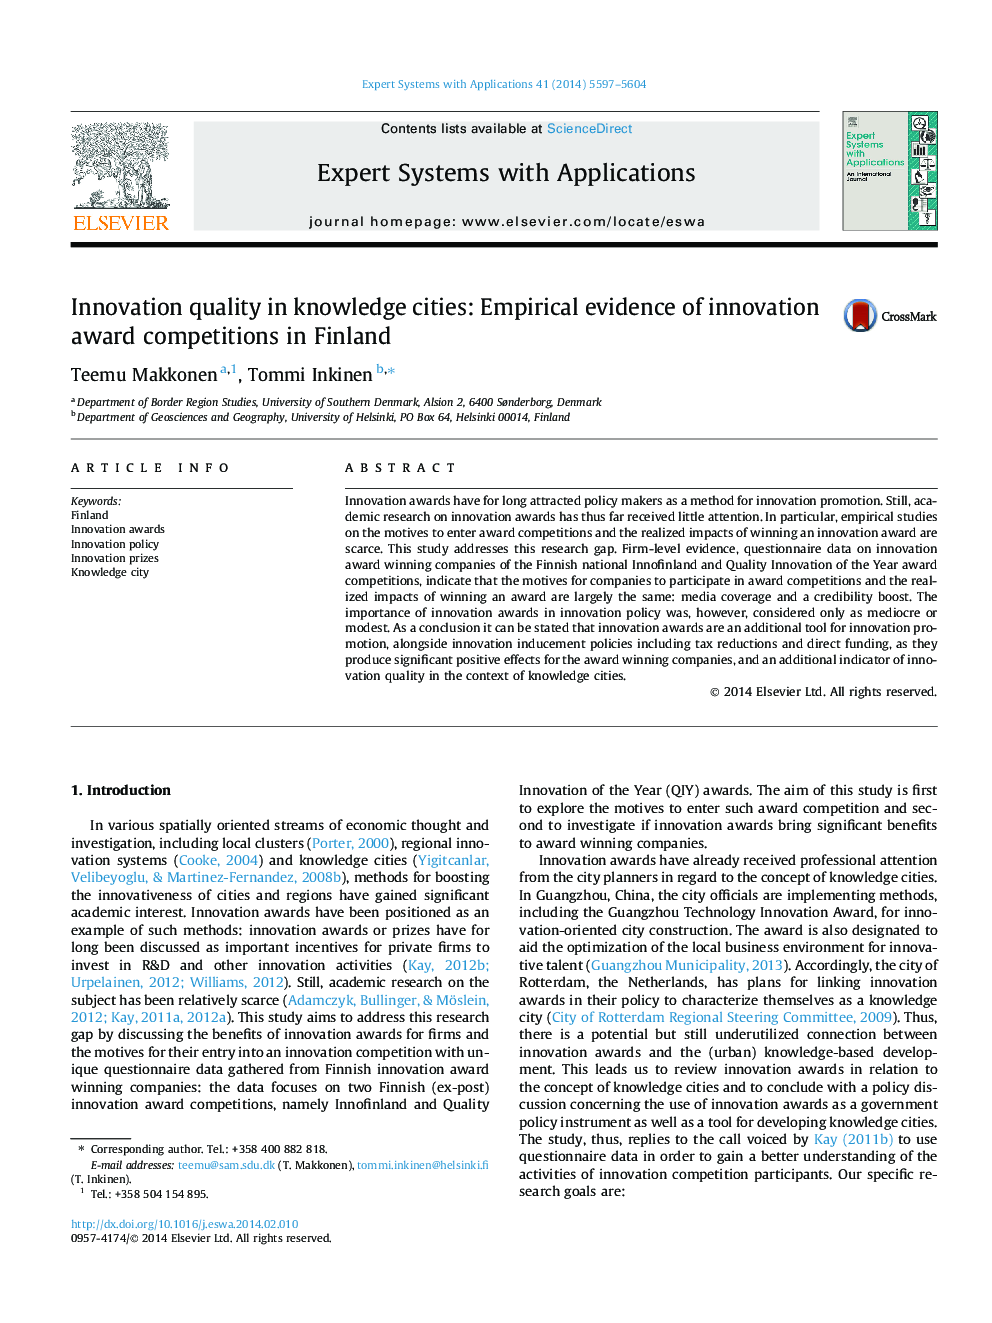 کیفیت نوآوری در شهرهای دانش: شواهد تجربی در مورد رقابت های جایزه نوآوری در فنلاند 